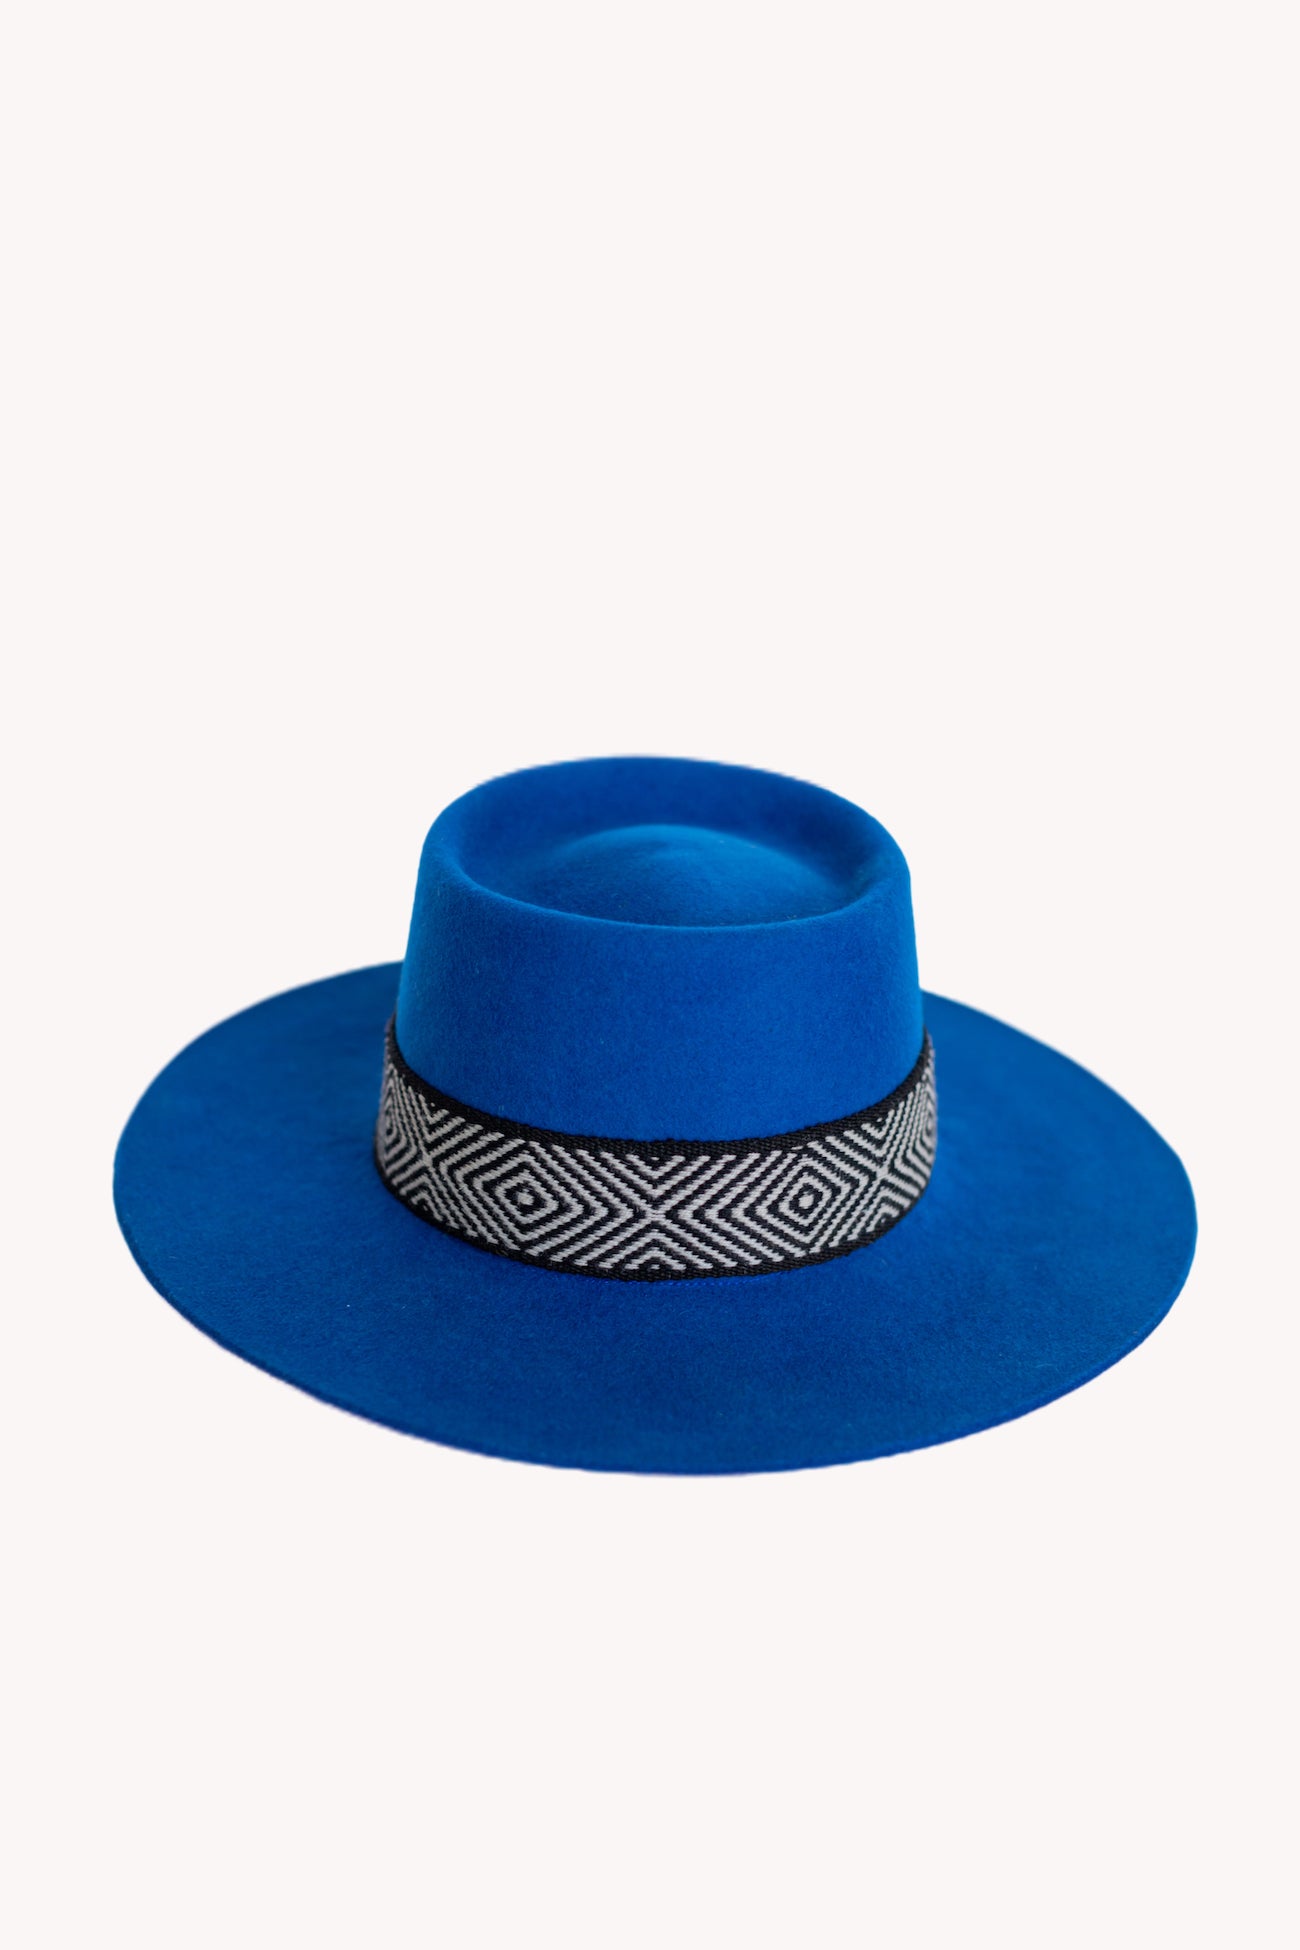 Blue Bucket style alpaca wool hat